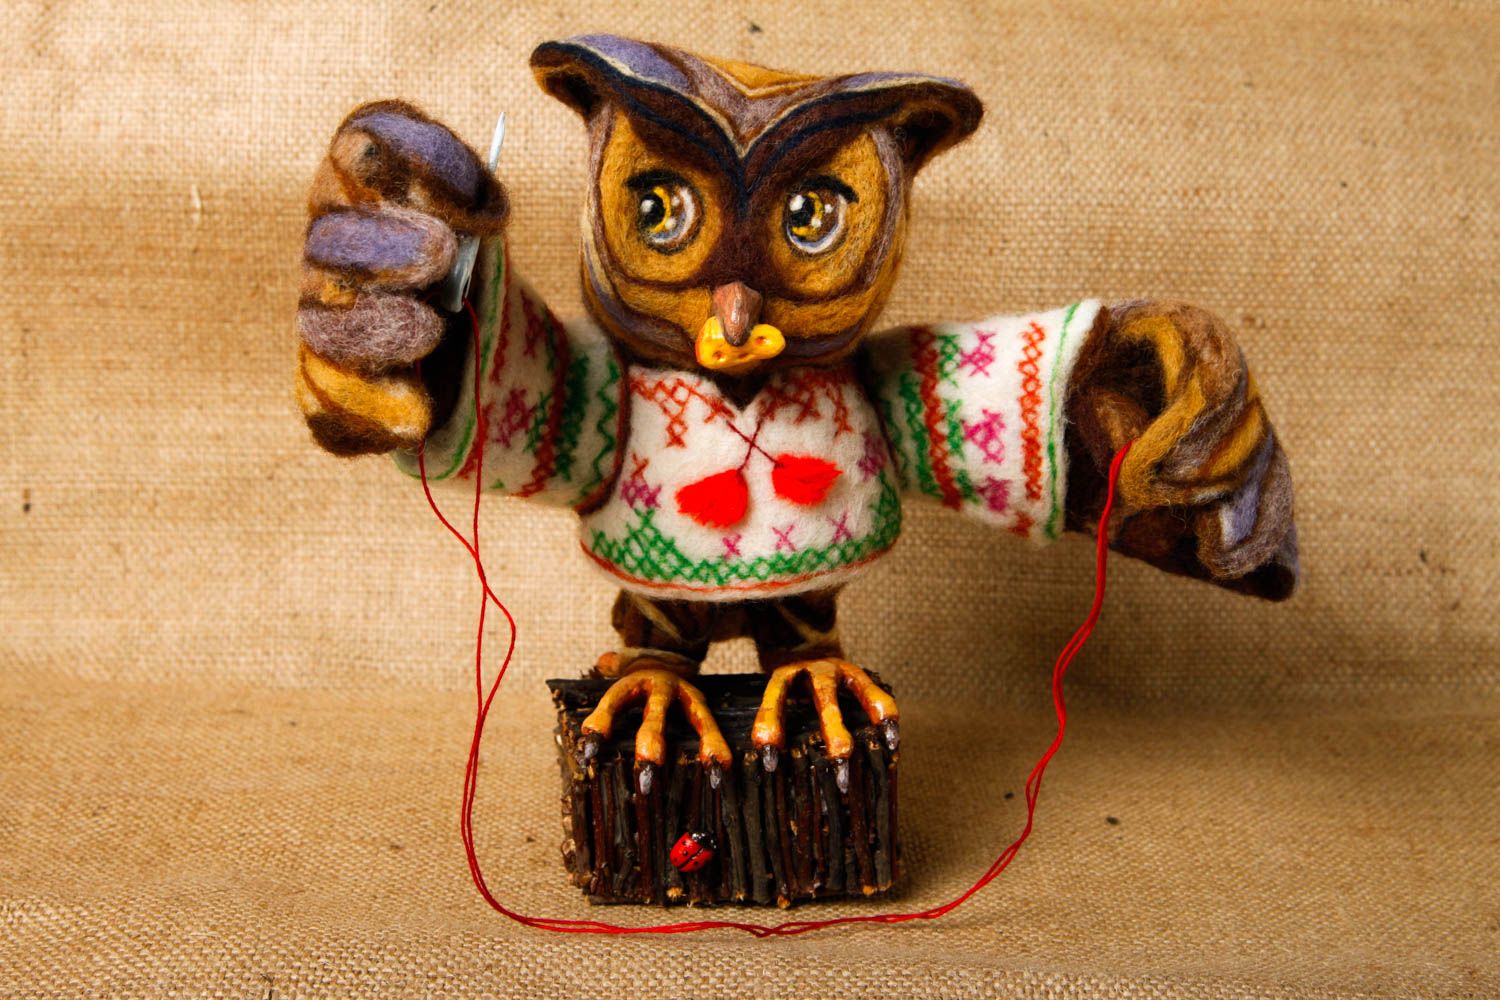 Игрушка сова ручной работы игрушка из валяной шерсти игрушка для детей фото 1